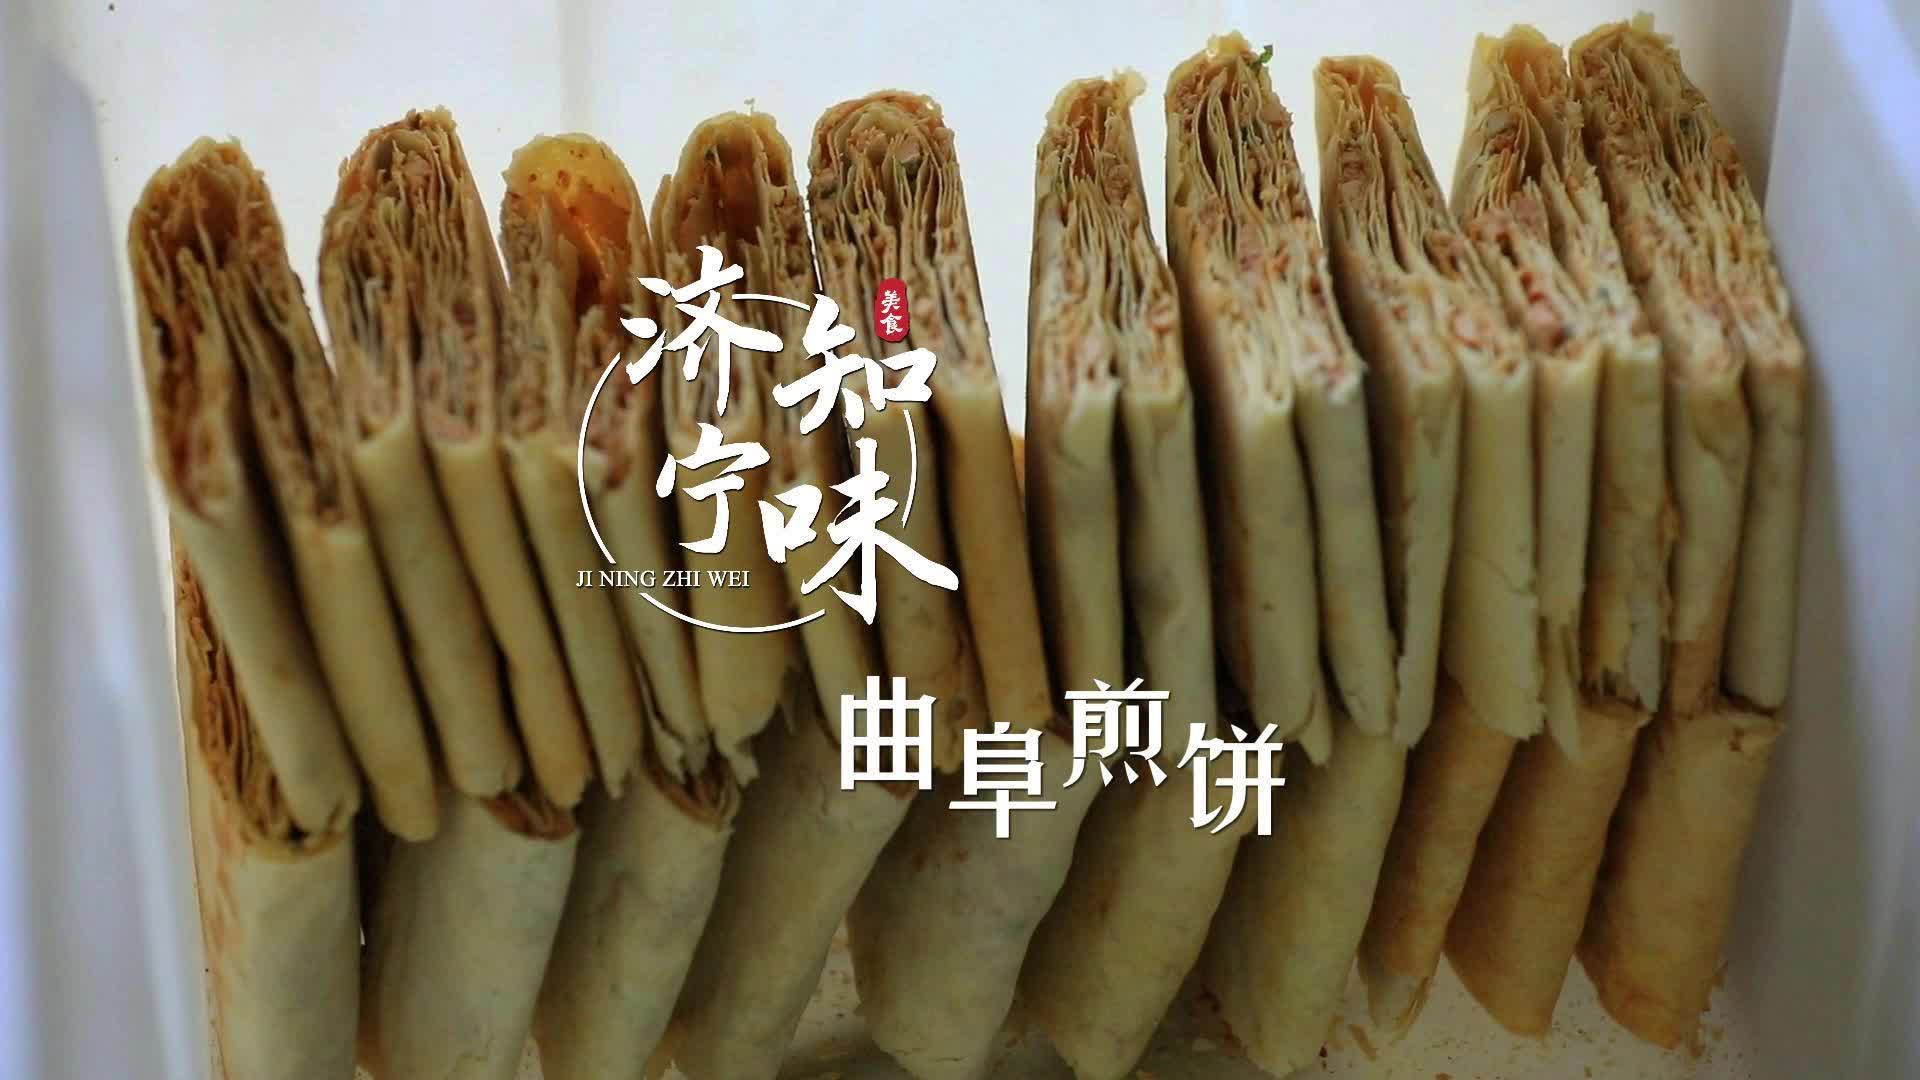 更济宁 | 济宁知味——曲阜煎饼